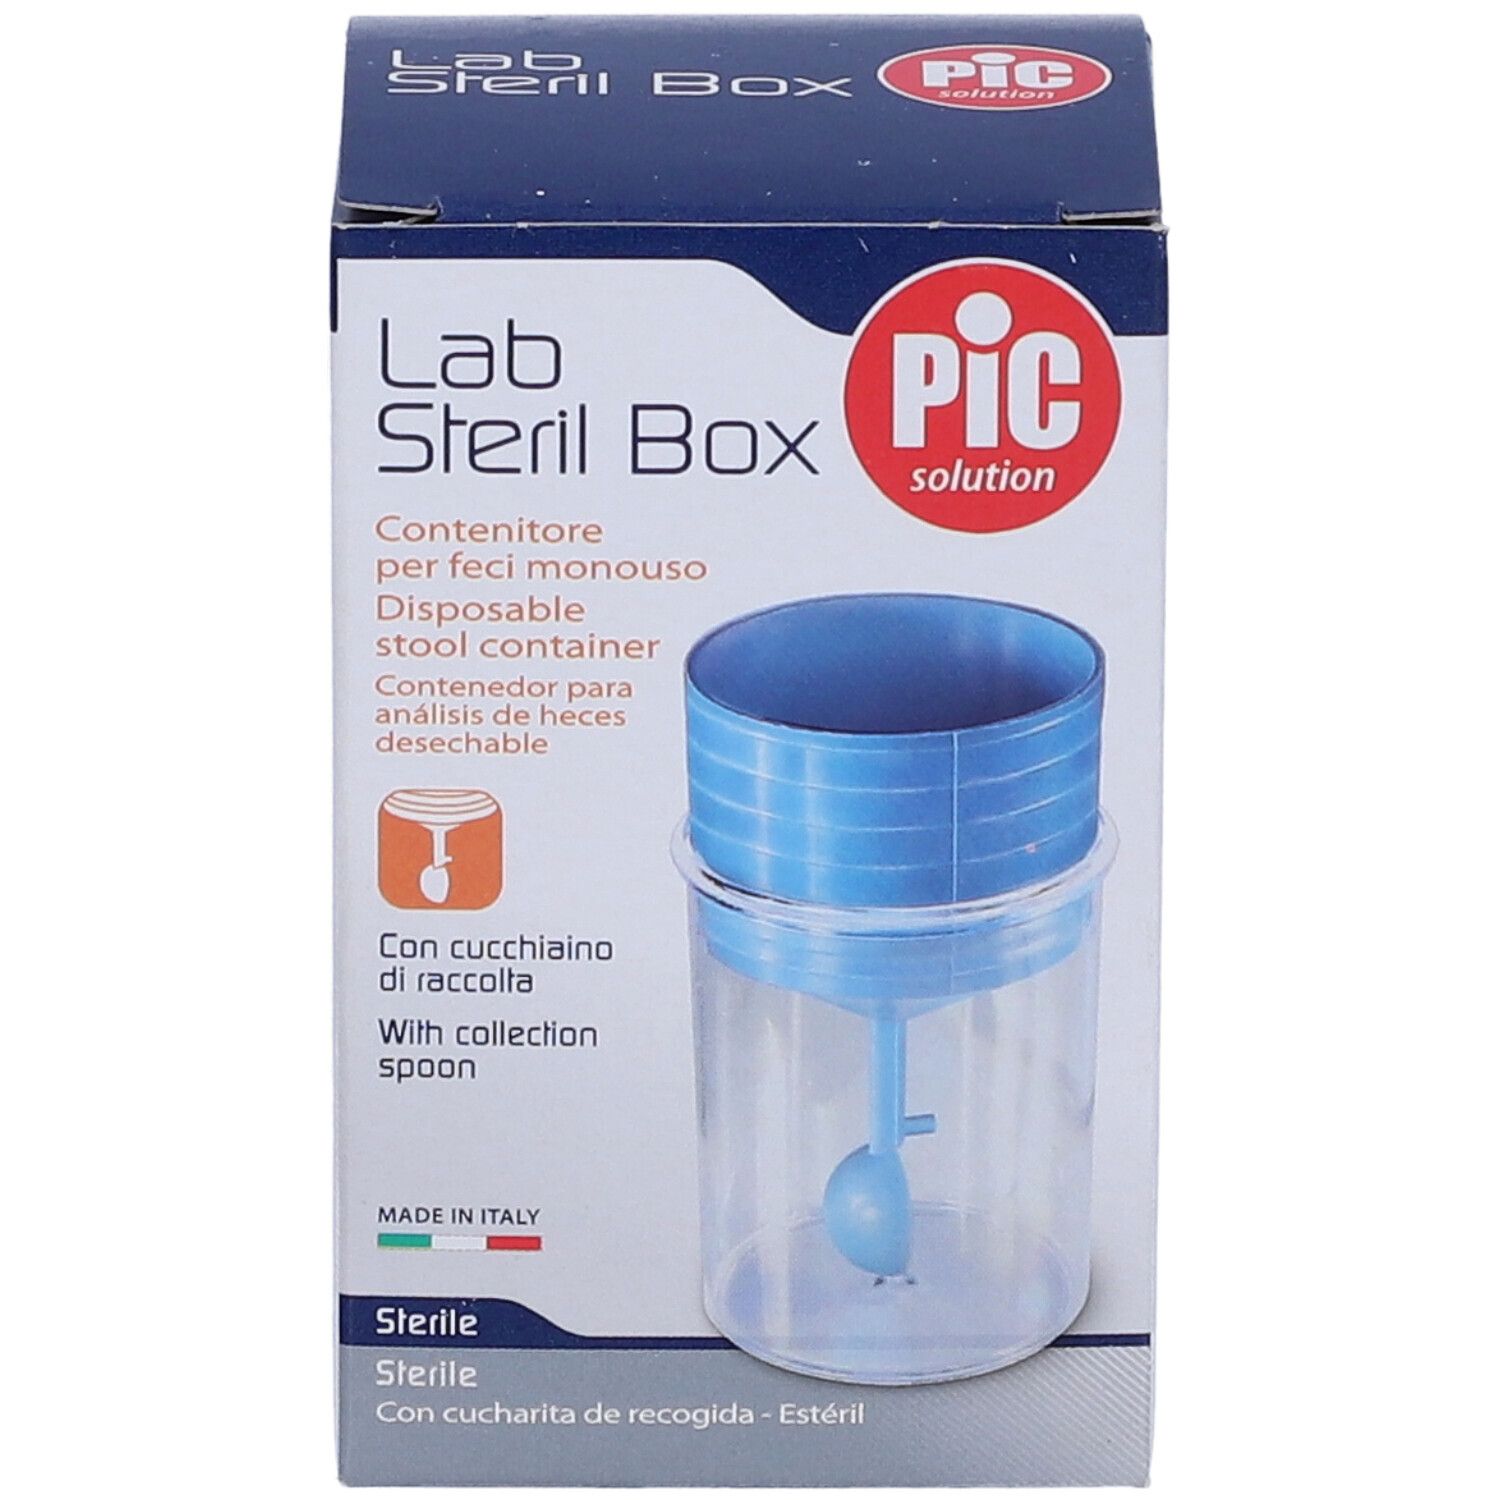 Pic Solution Lab Steril Box Contenitore per Feci Monouso 1 pz